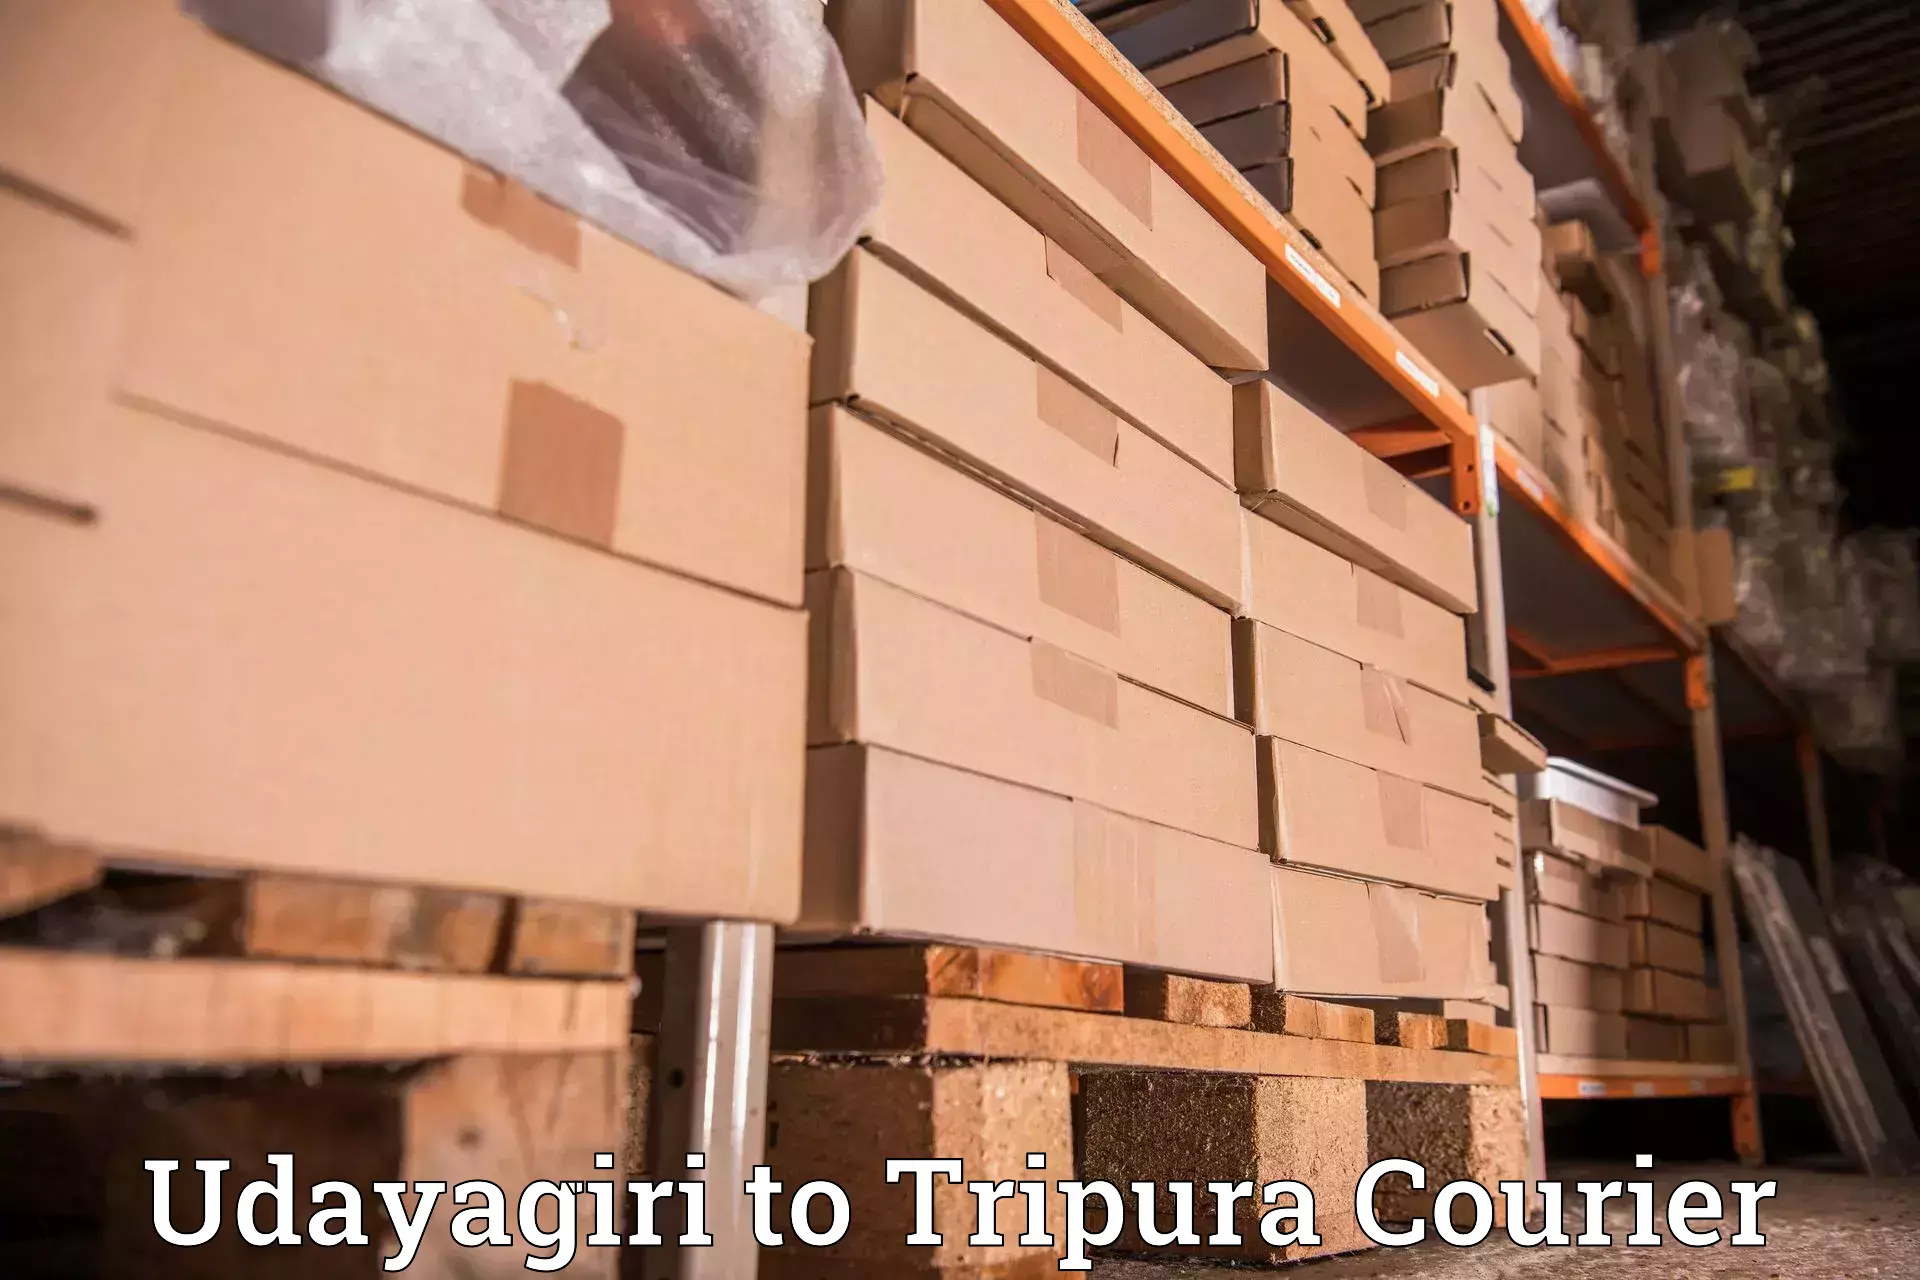 Reliable delivery network Udayagiri to Dharmanagar